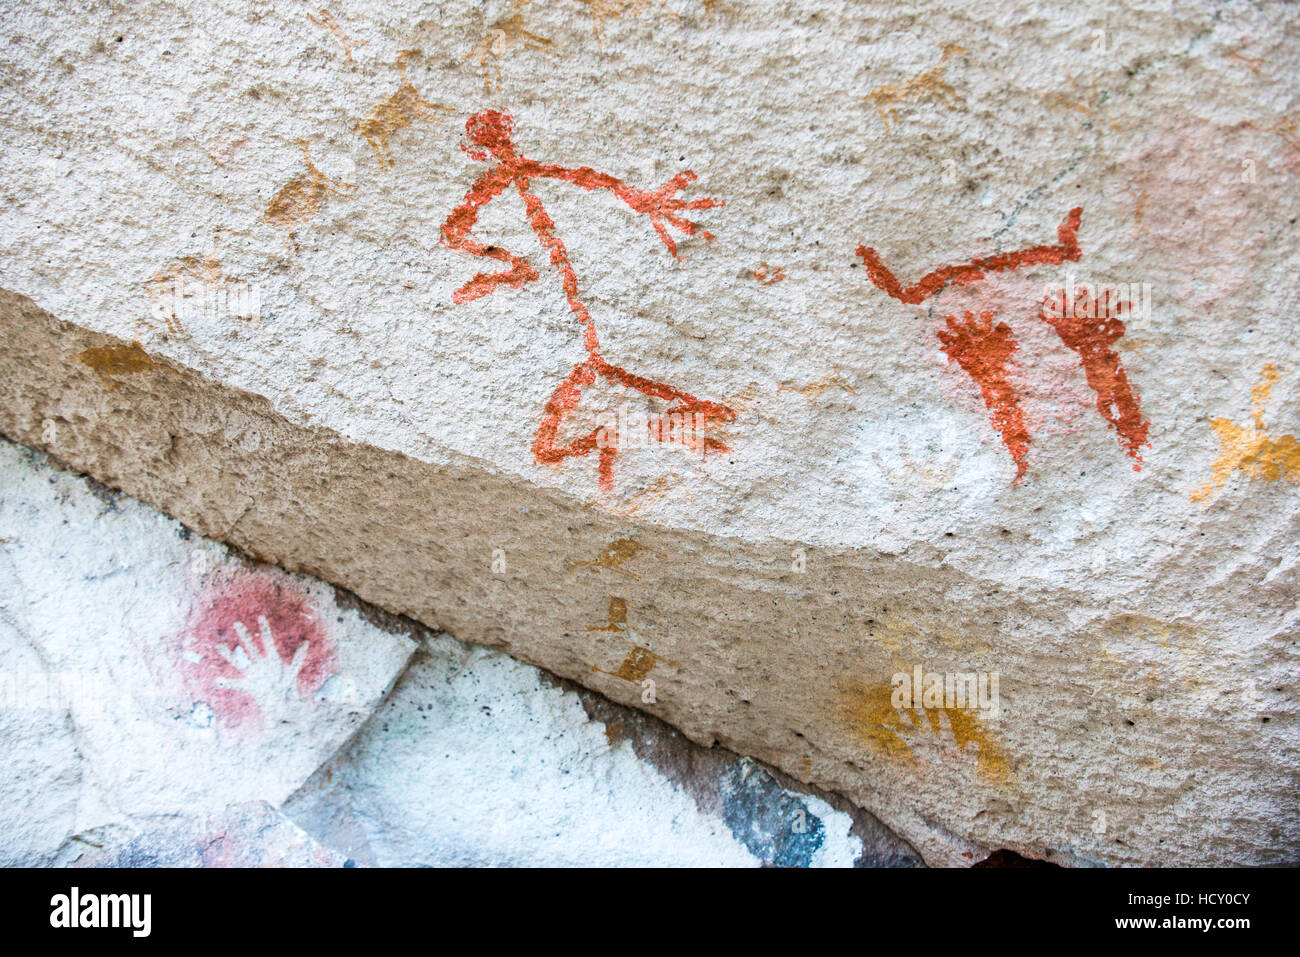 Stick figure une peinture rupestre à Cueva de las Mano (Grotte de mains), l'UNESCO, en Patagonie, Argentine Banque D'Images